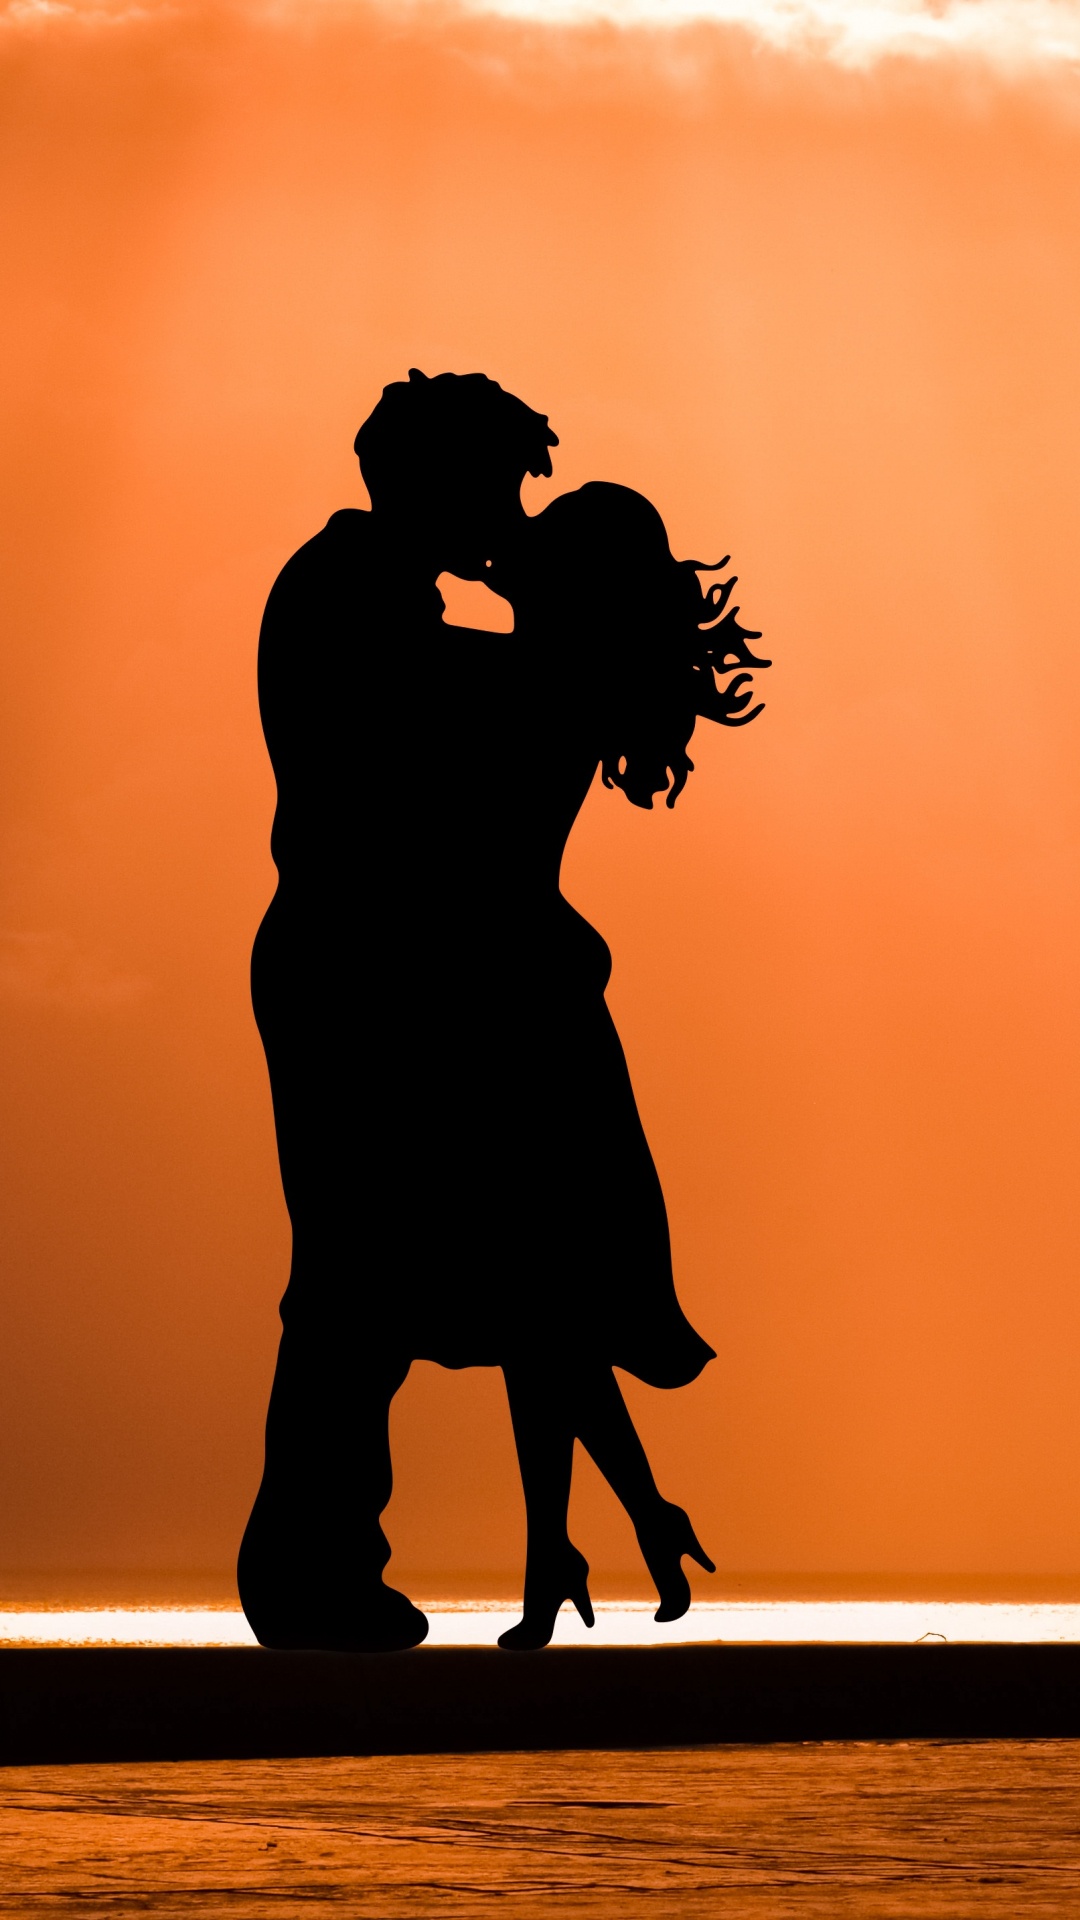 Romantik, Kuss, Silhouette, Menschen in Der Natur, Abend. Wallpaper in 1080x1920 Resolution